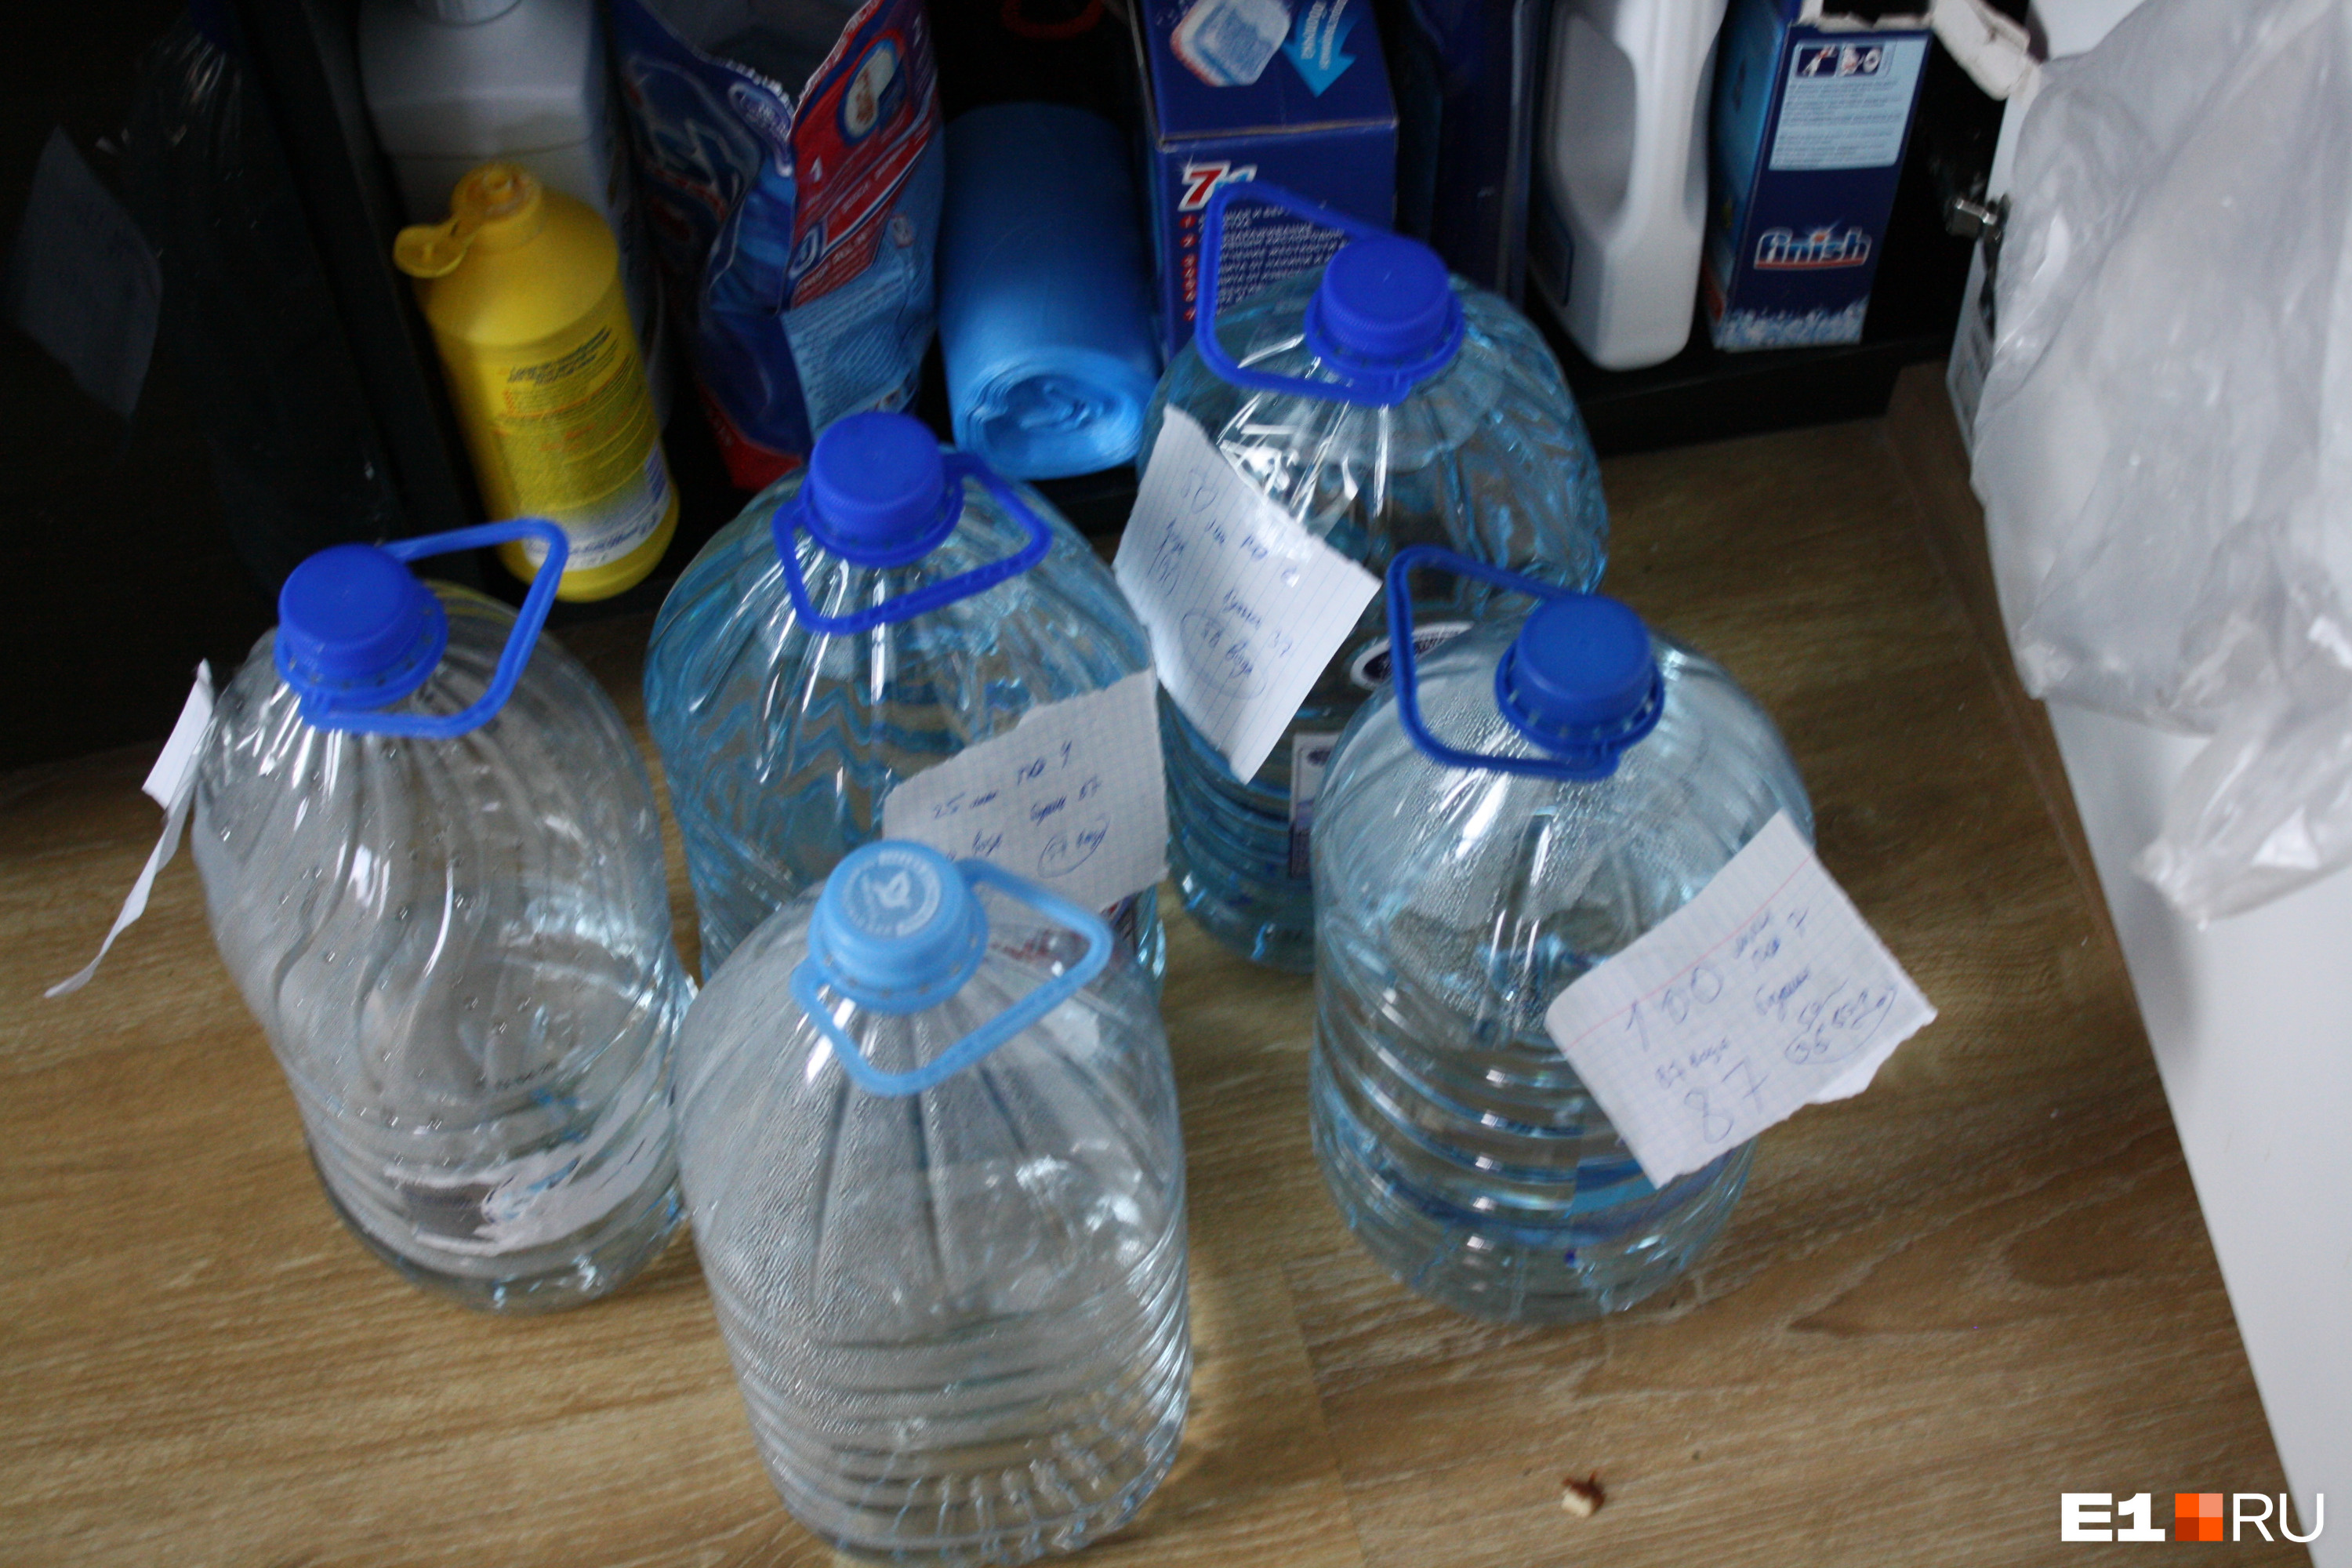 Следователи специально изъяли эти бутылки, чтобы проверить их содержимое 